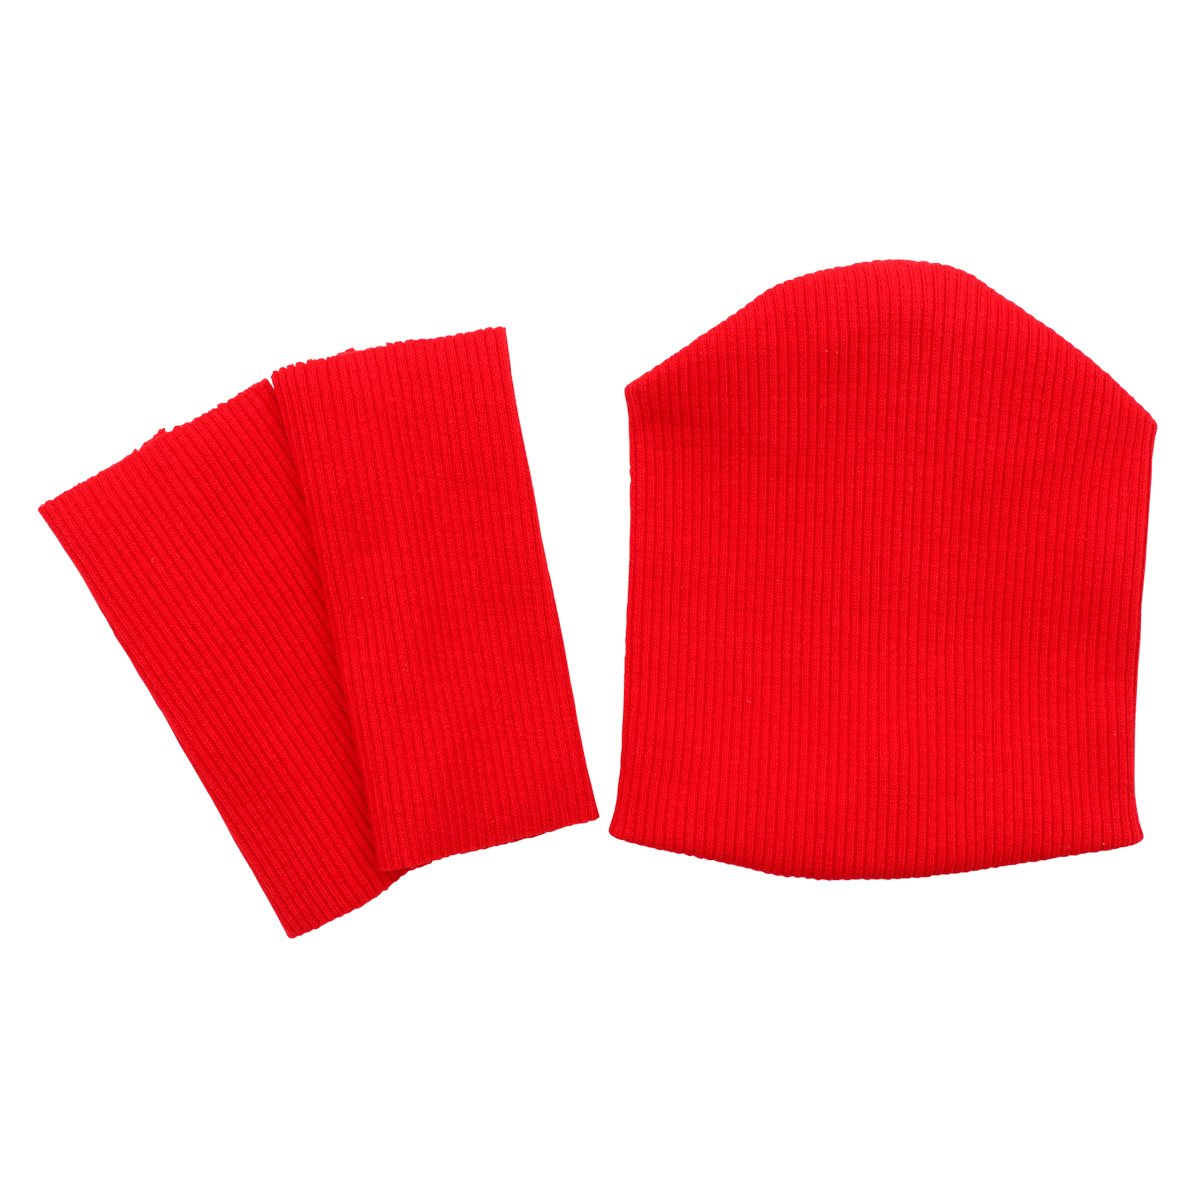 28875 Комплект одежды для игрушек красный: шапка (9,5*10 см), гетры (3*8 см) гетры nike academy over the calf football socks красный